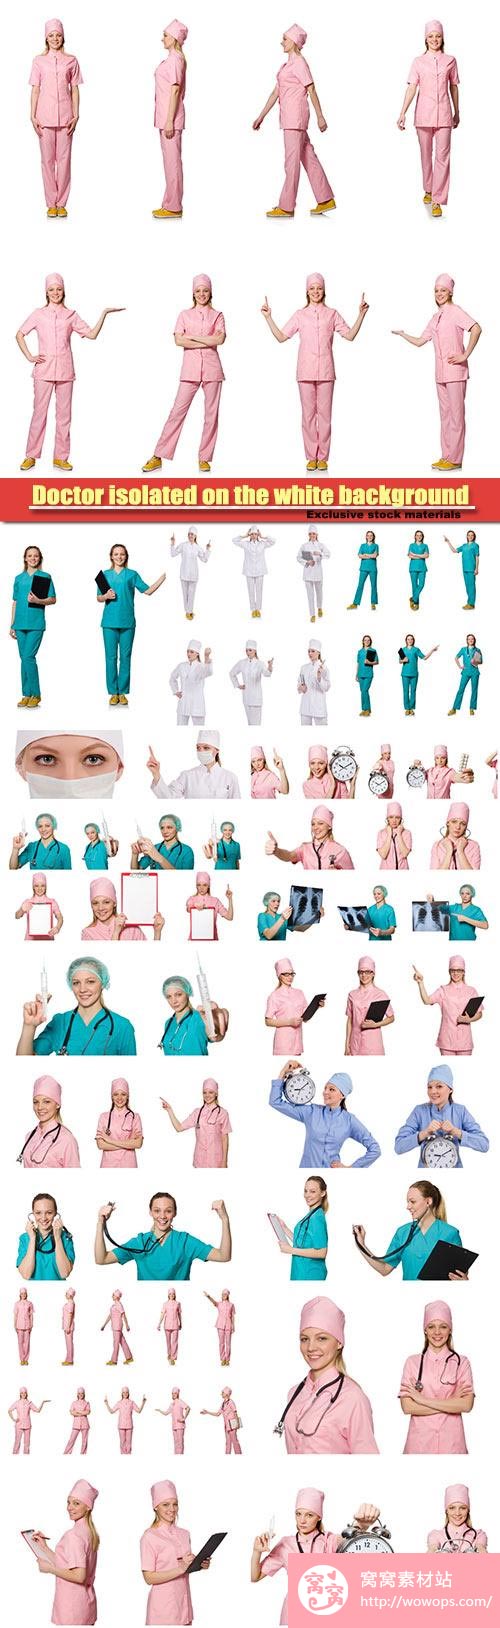 医生护士图片素材1